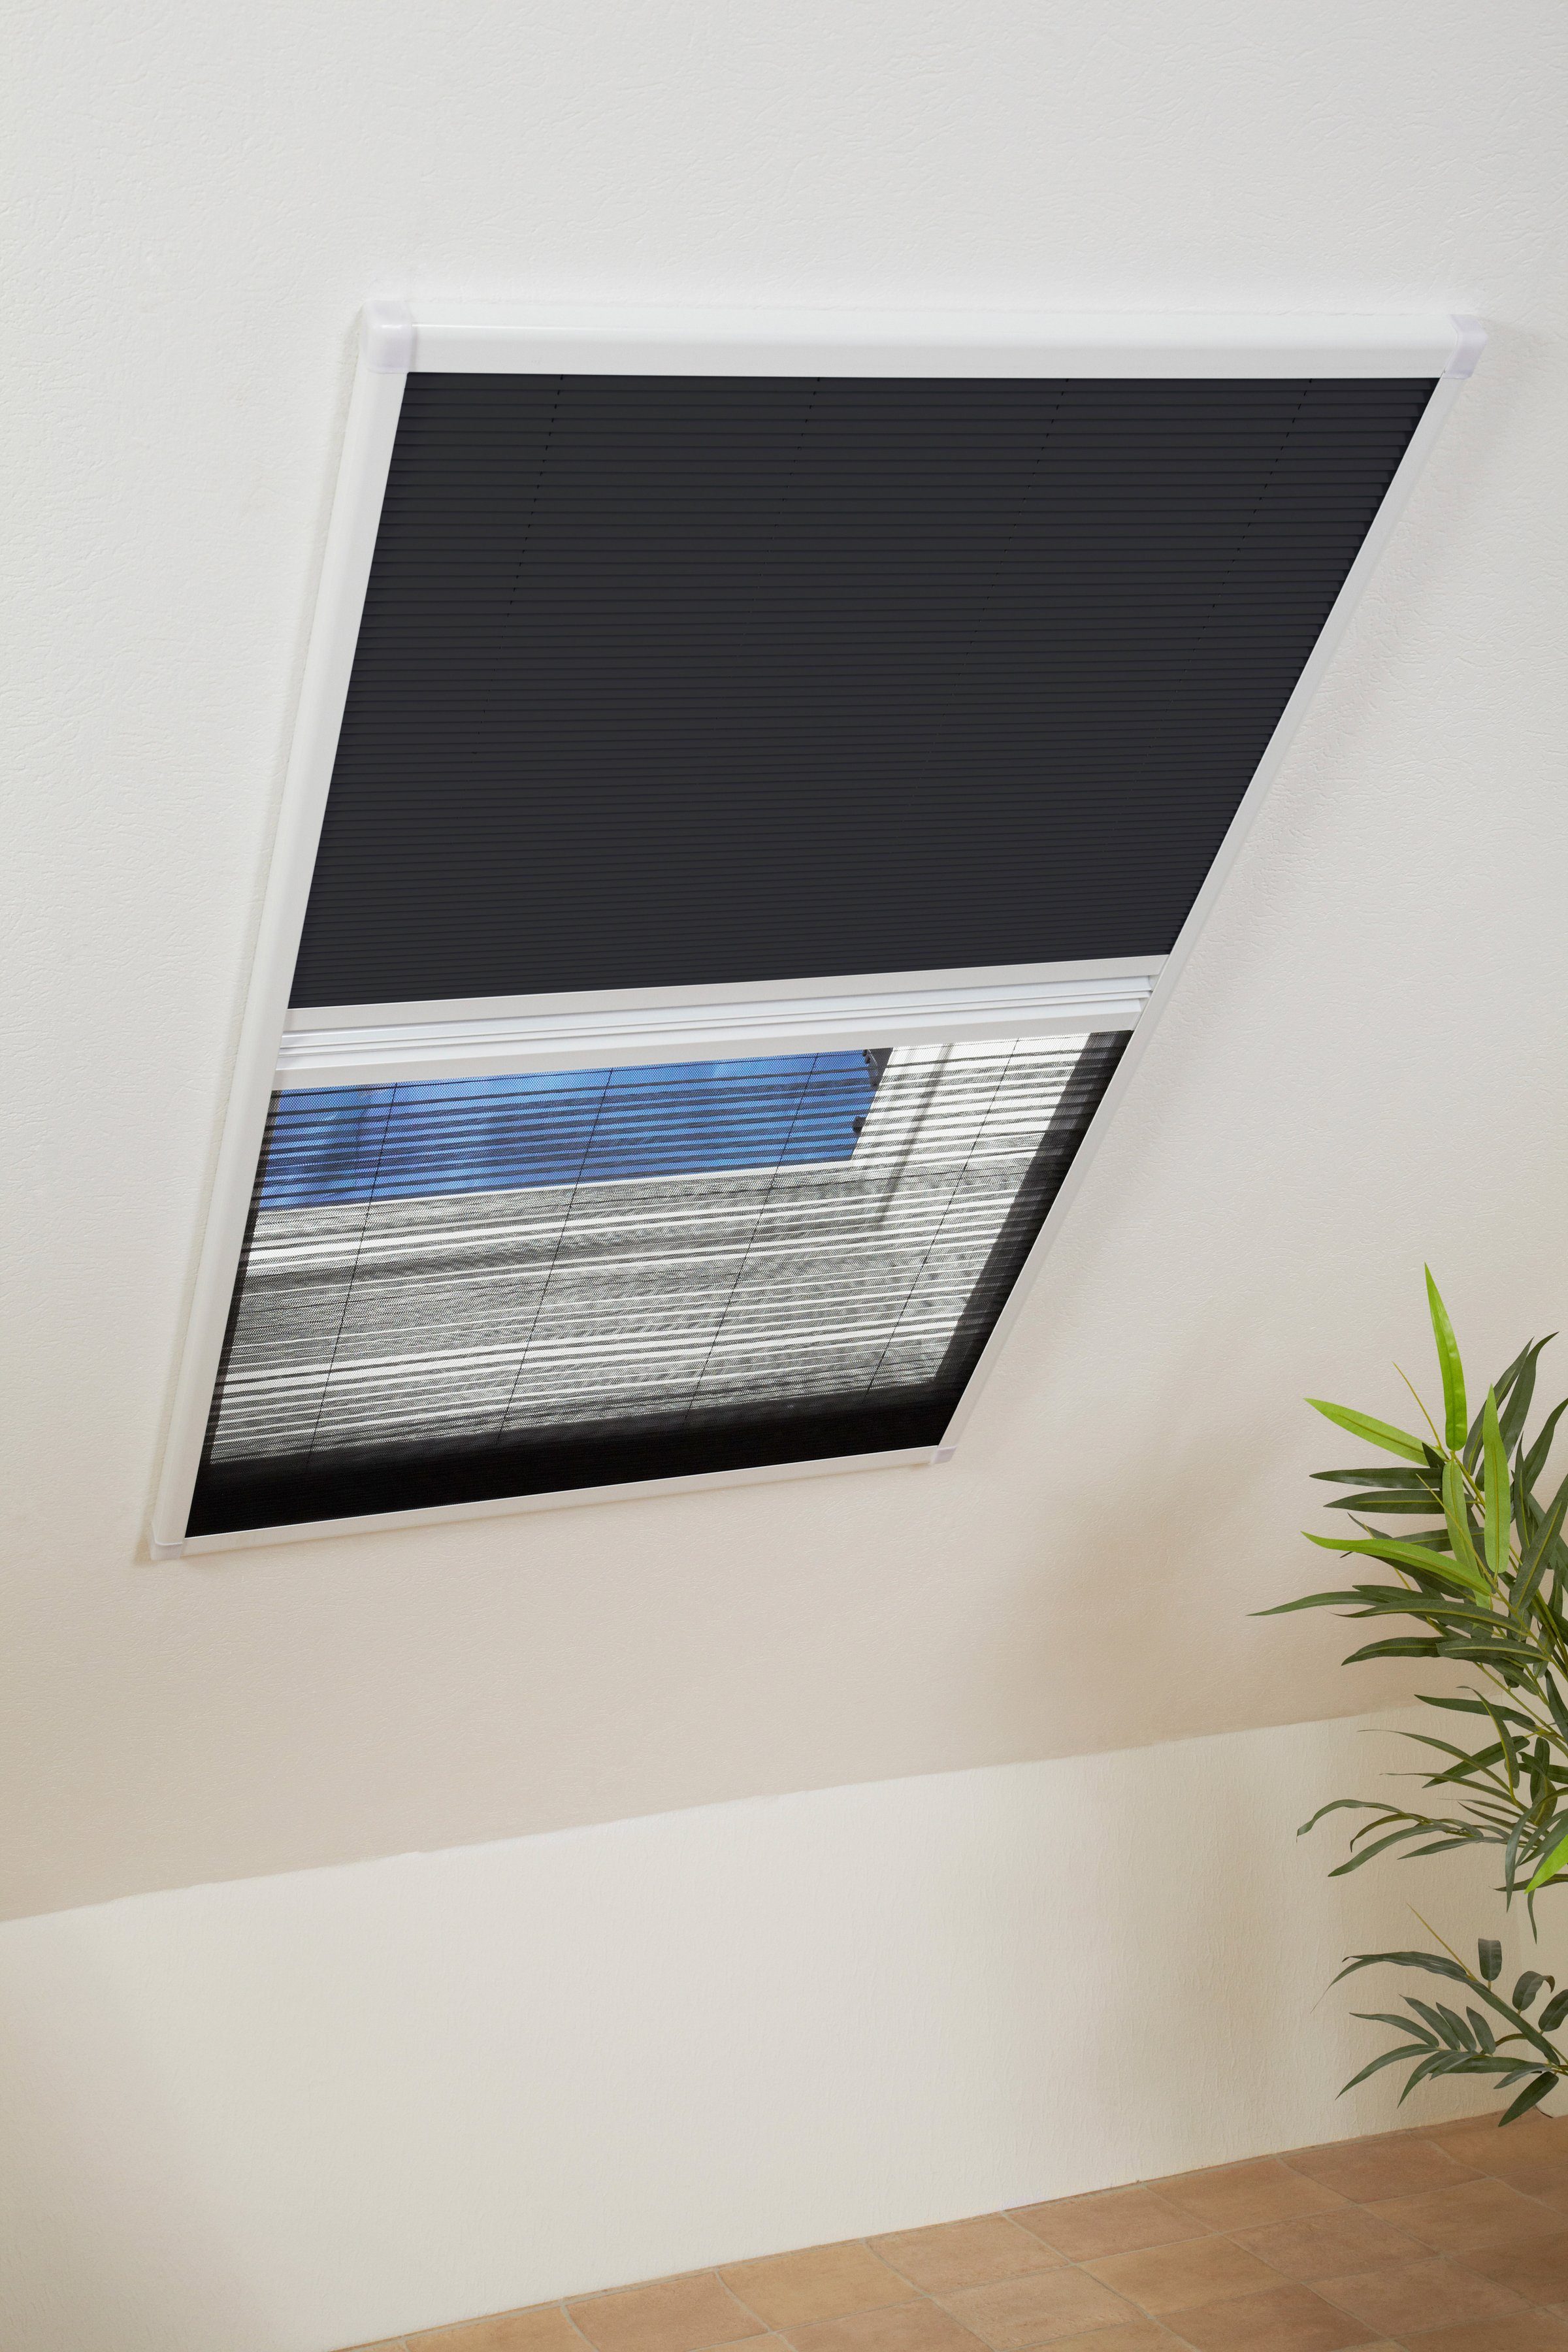 Insektenschutzrollo für 110x160 weiß/schwarz, BxH: international, transparent, verschraubt, cm Dachfenster, hecht